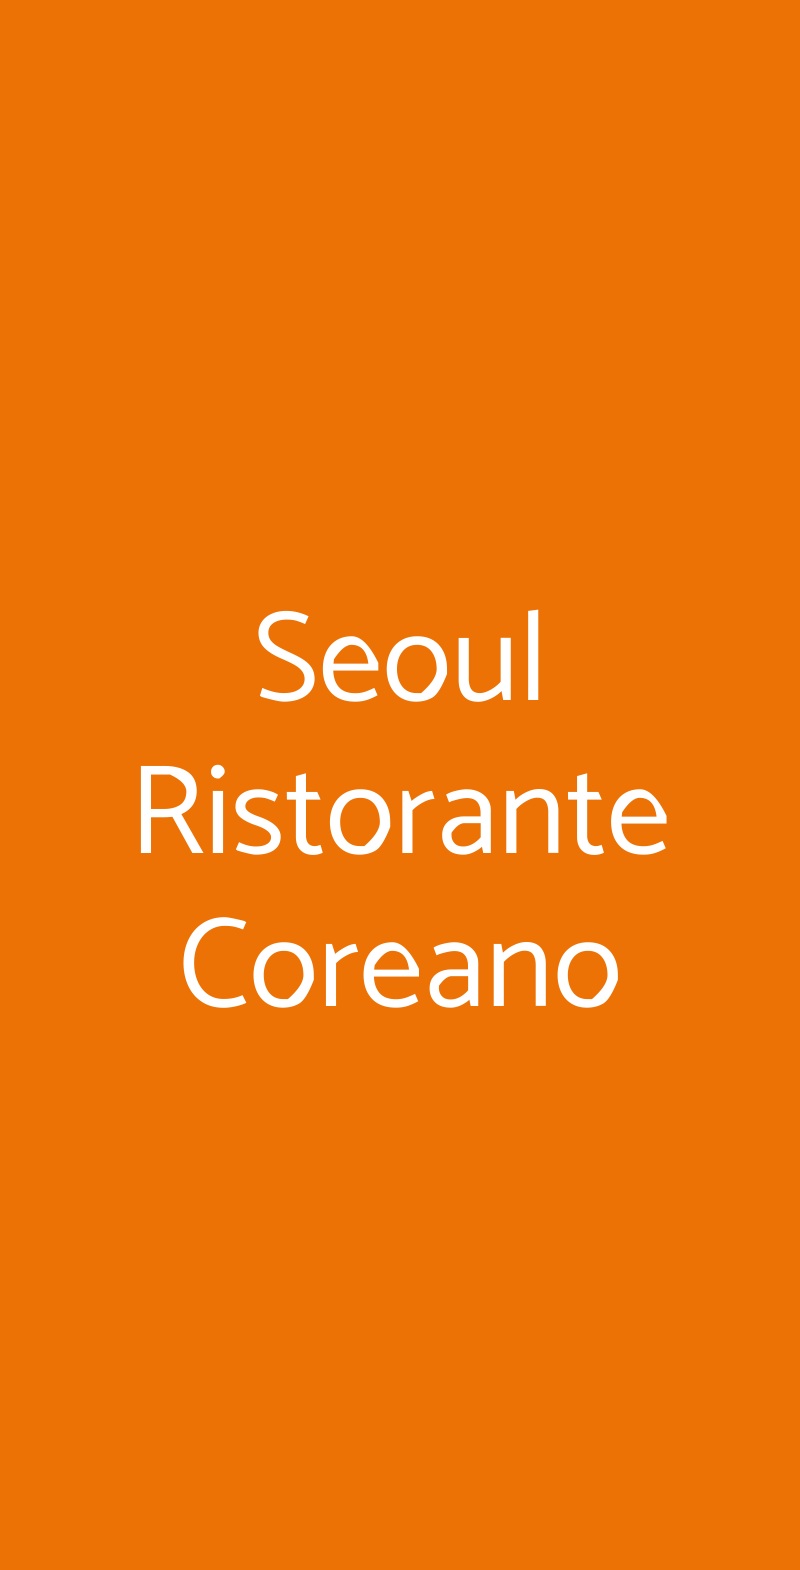 Seoul Ristorante Coreano Milano menù 1 pagina